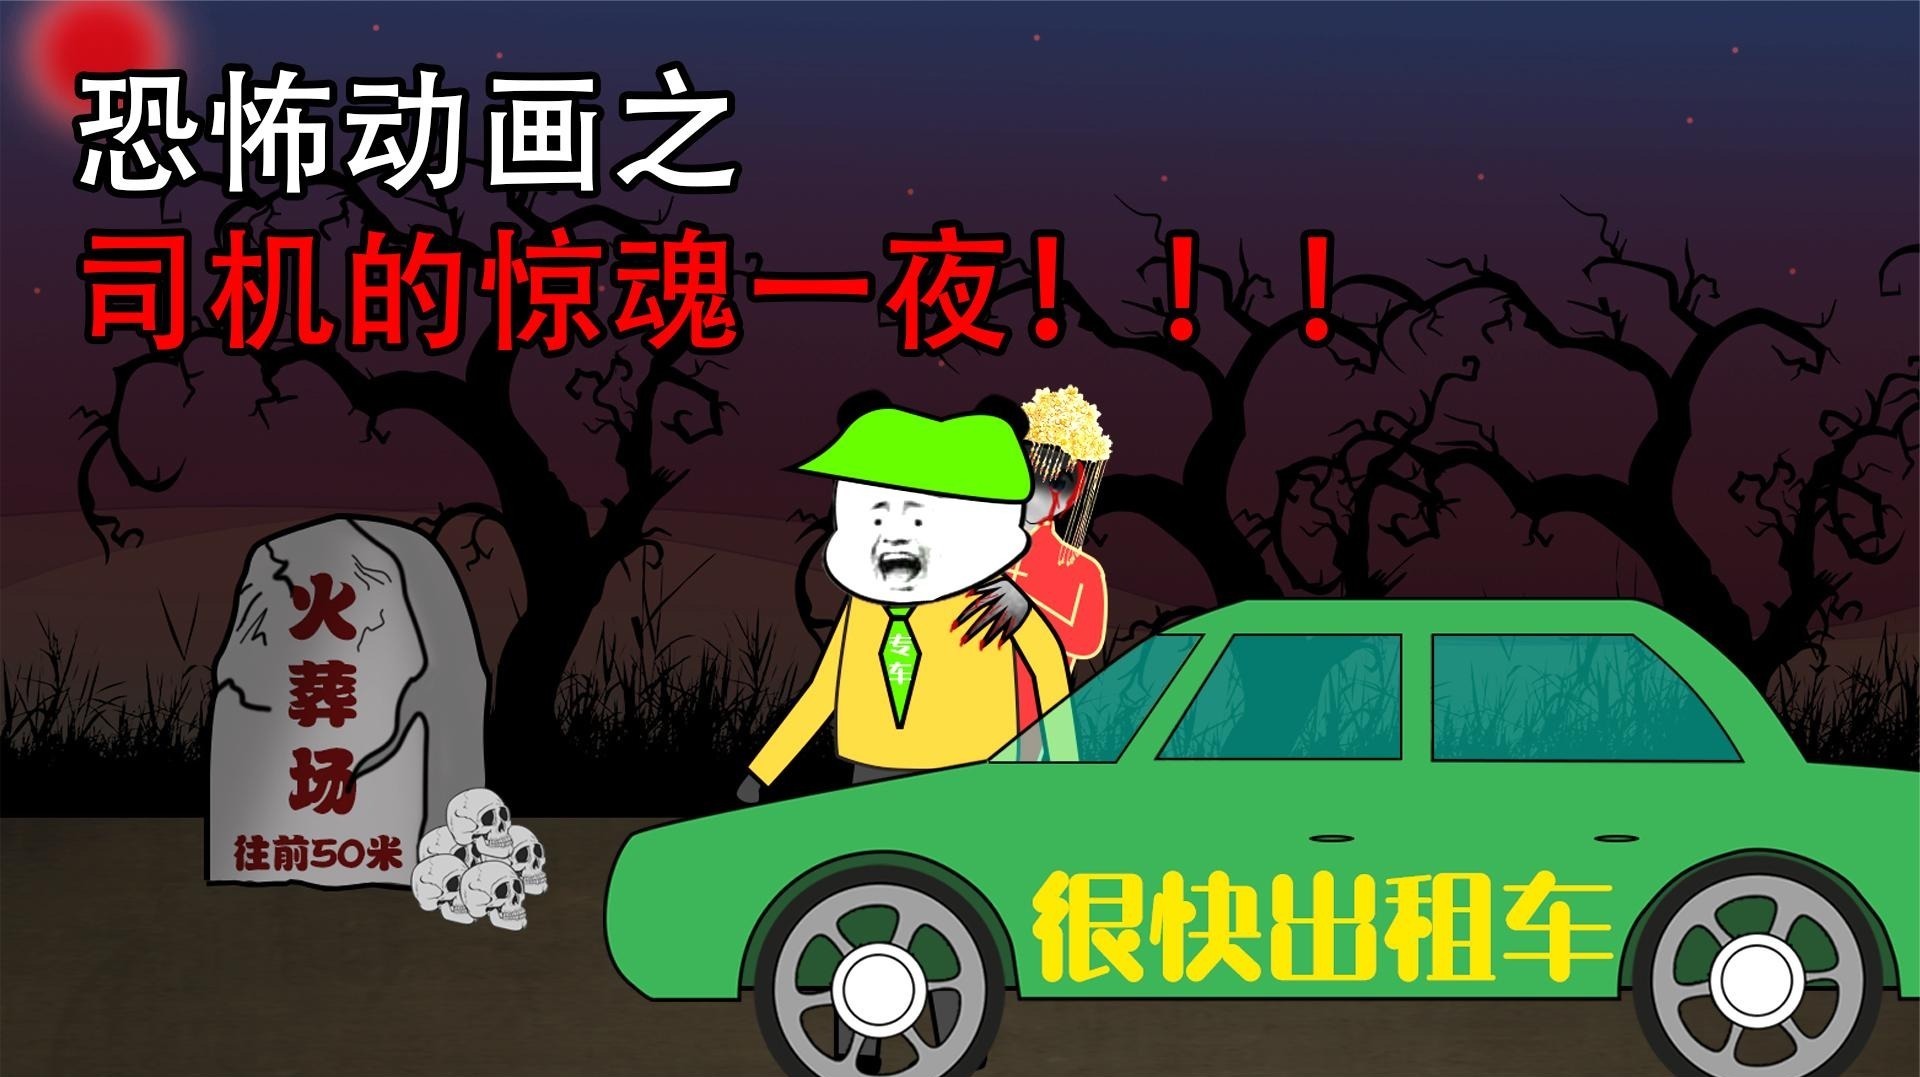 沙雕恐怖动画【司机的惊魂一夜】路边遇红衣女子居然要去火葬场